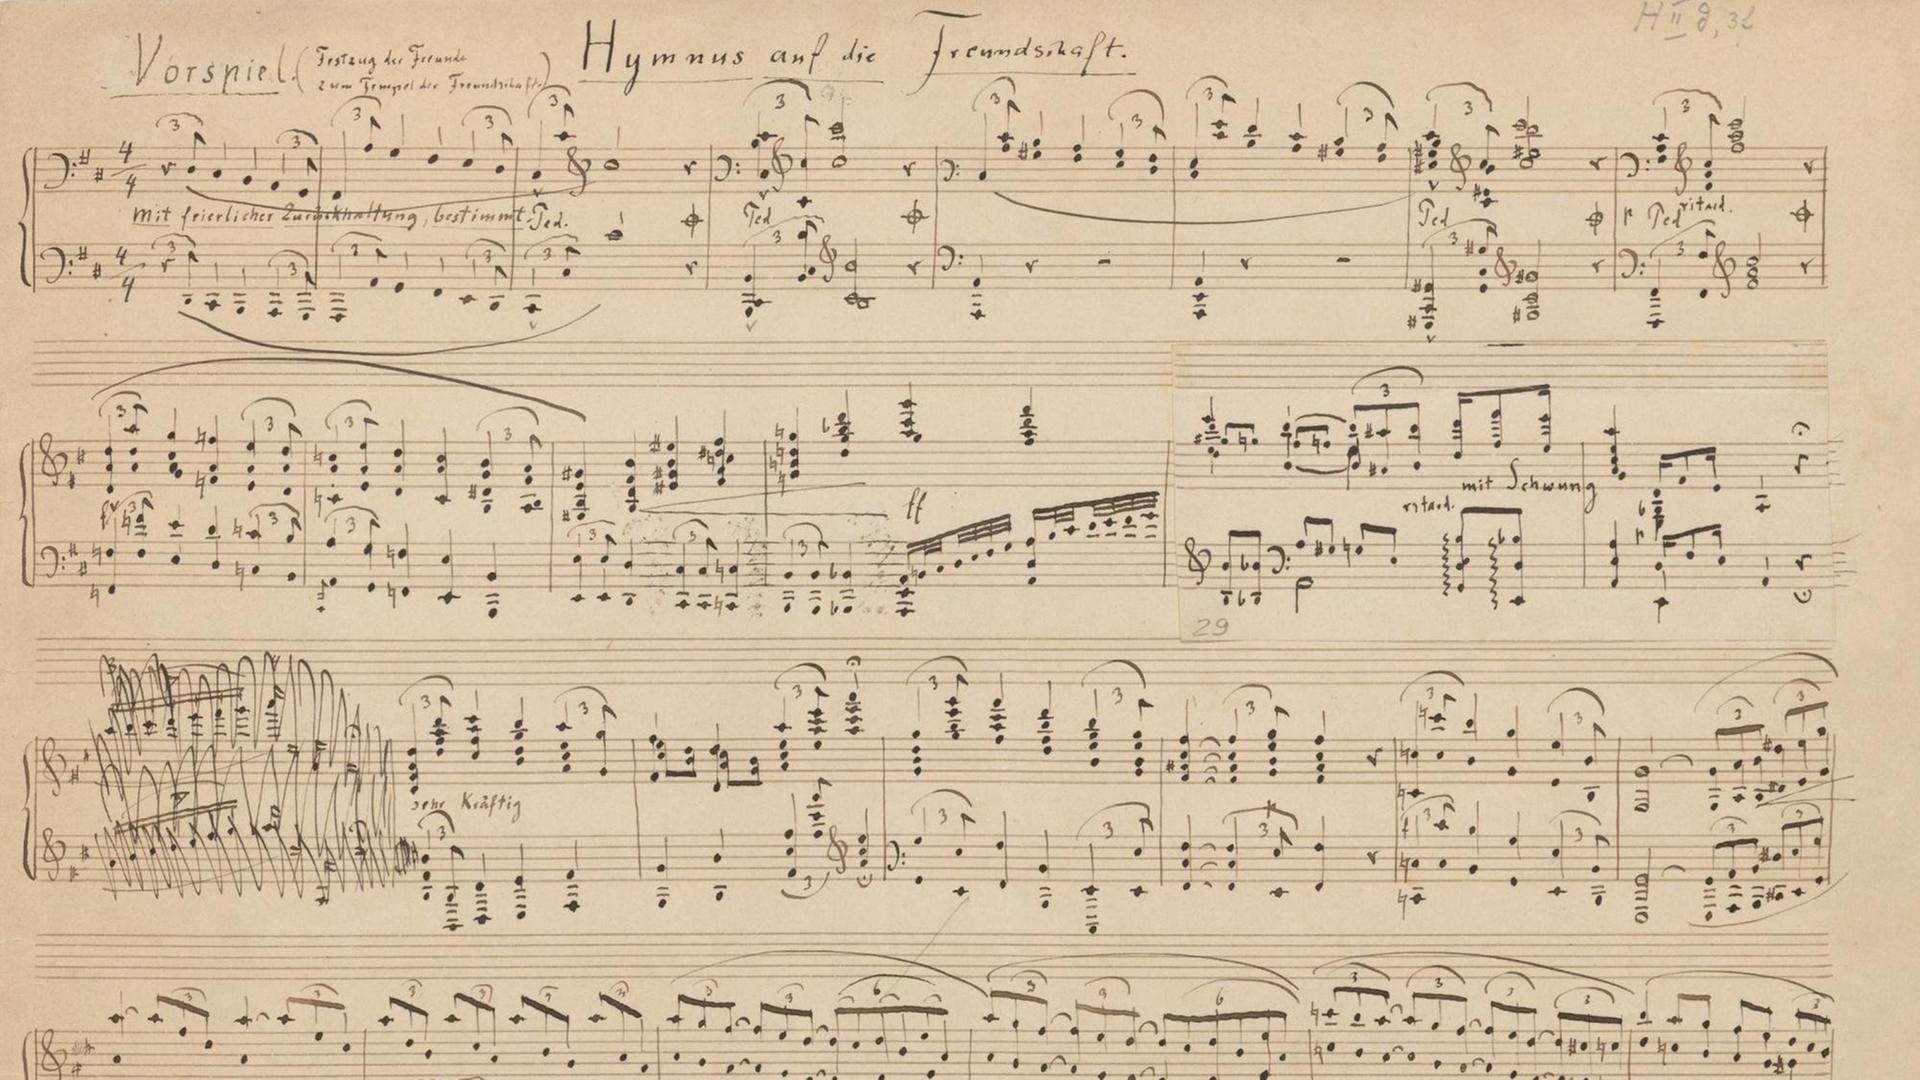 Noten des "Hymnus auf die Freundschaft. Vorspiel (Festzug der Freunde zum Tempel der Freundschaft)", von Friedrich Nietzsche aus dem Jahr 1874.